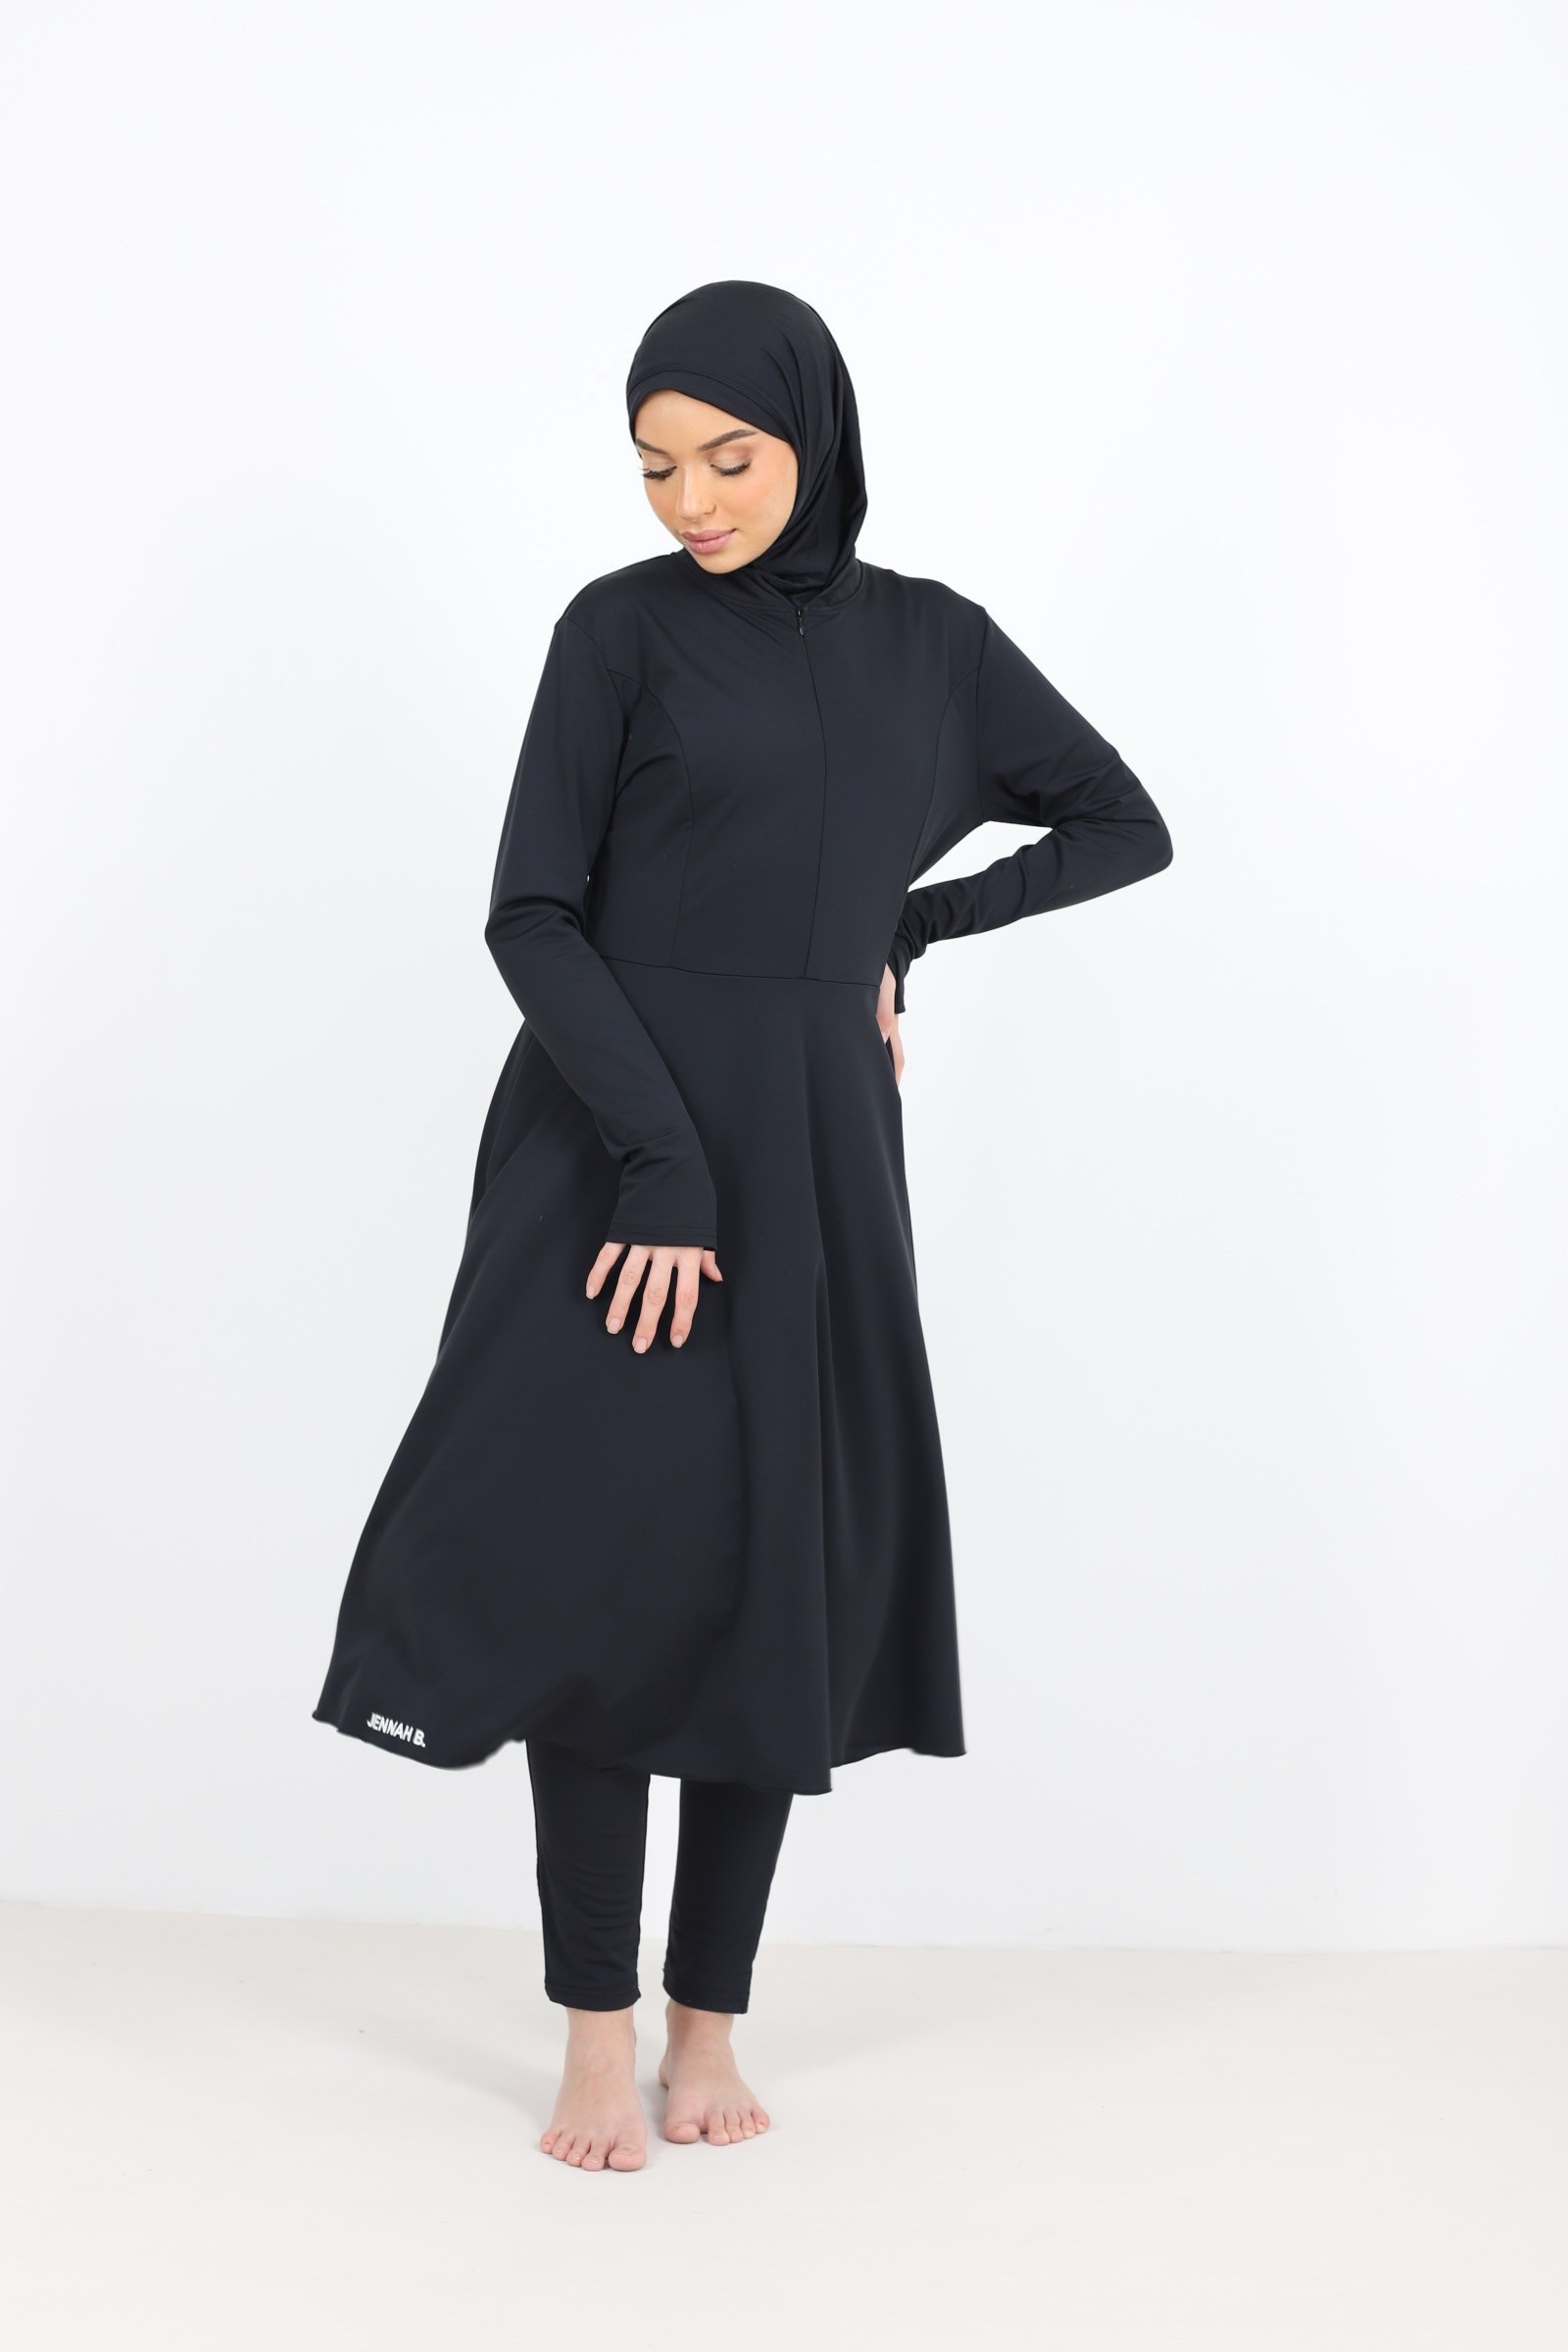 Burkini très long mastour pour femme maillot de bain islamique 